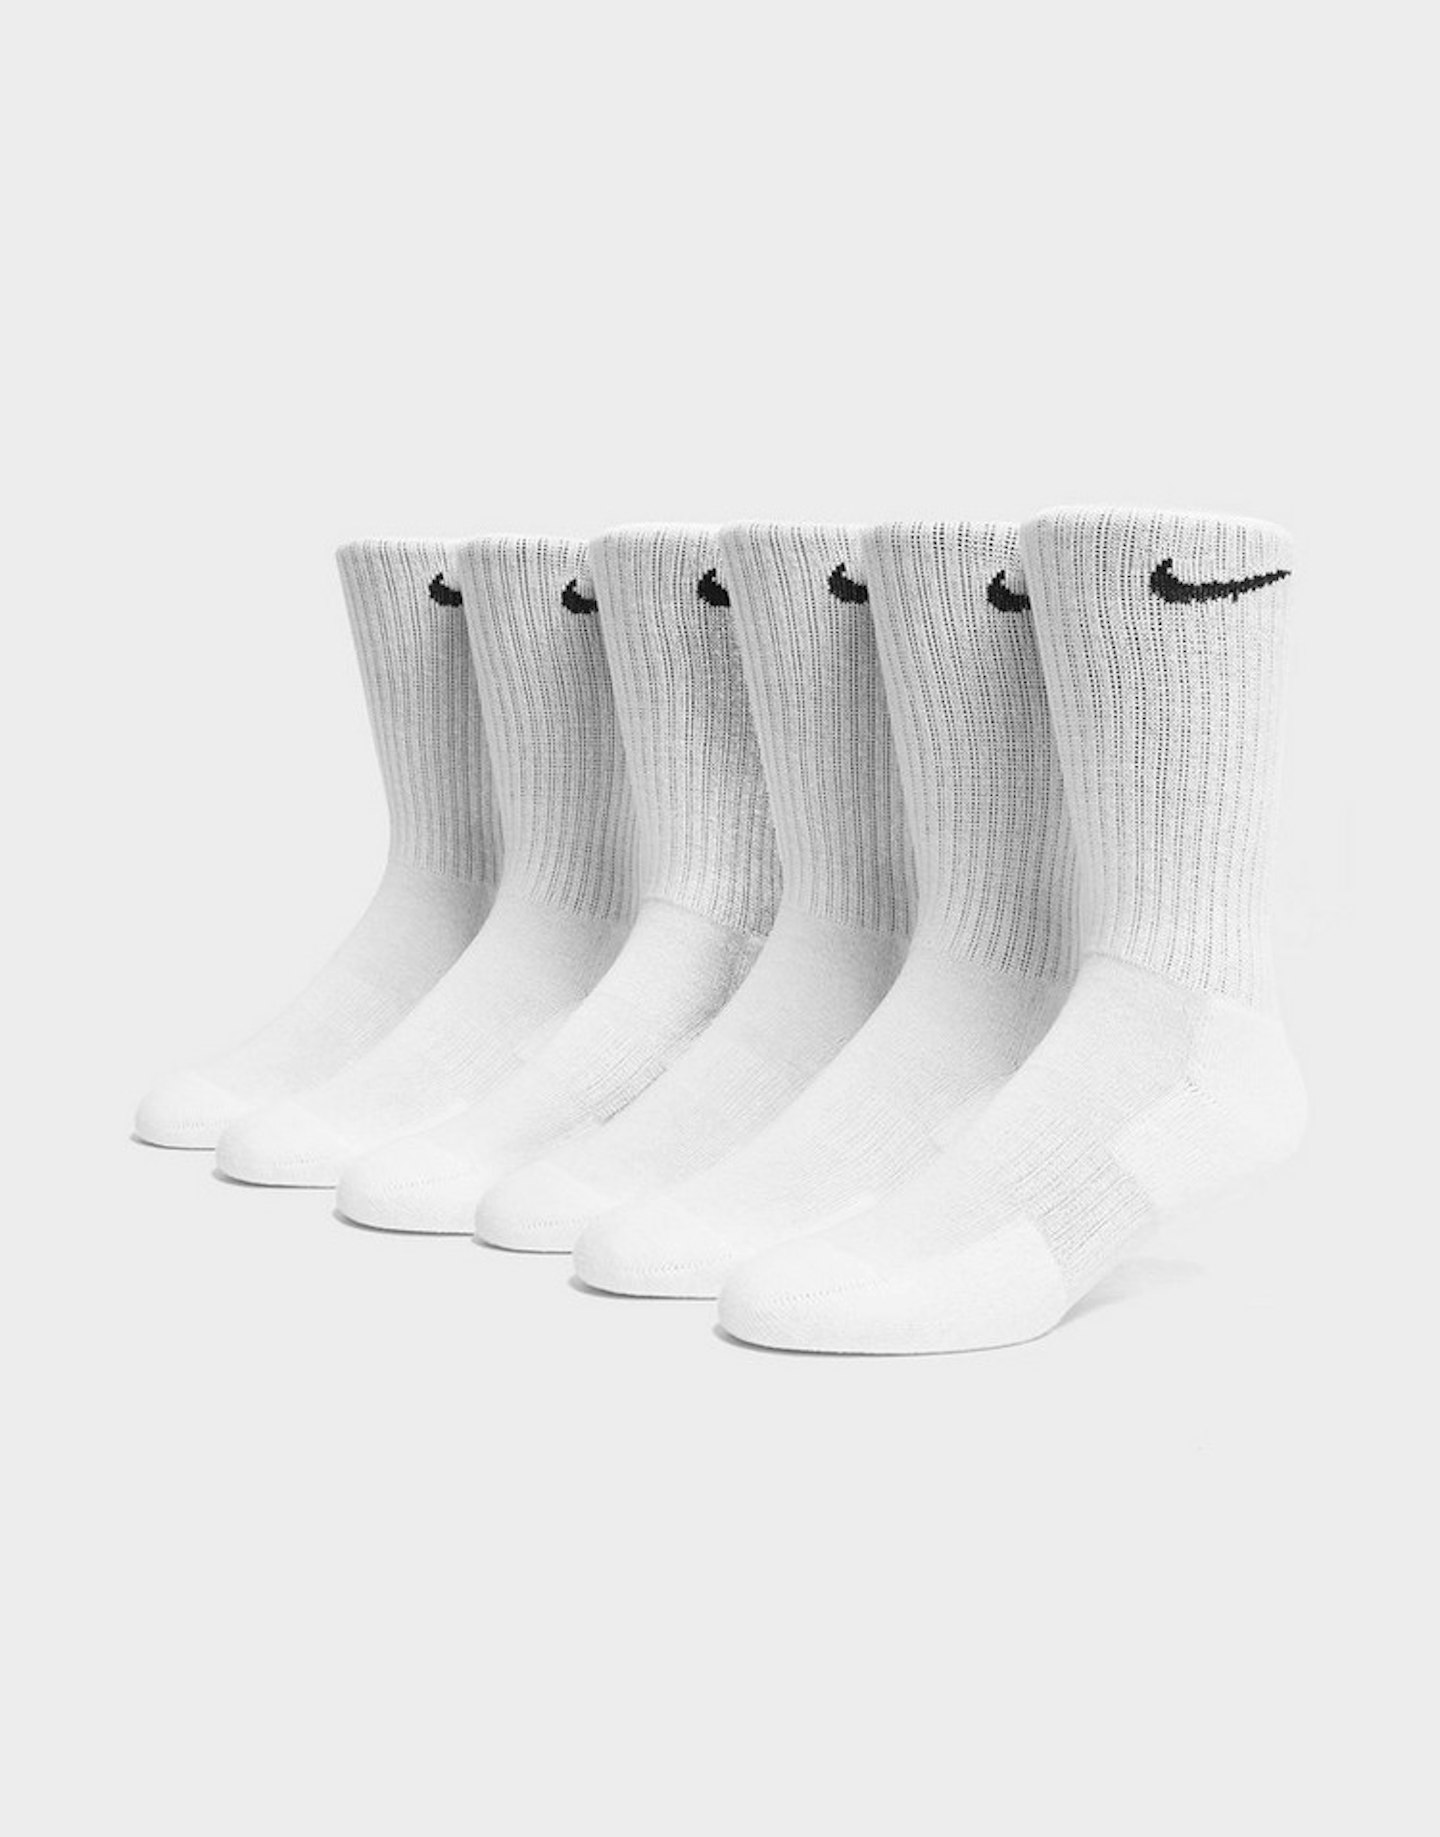 Nike, 6 Pack Cushion Crew Socks, £17.00